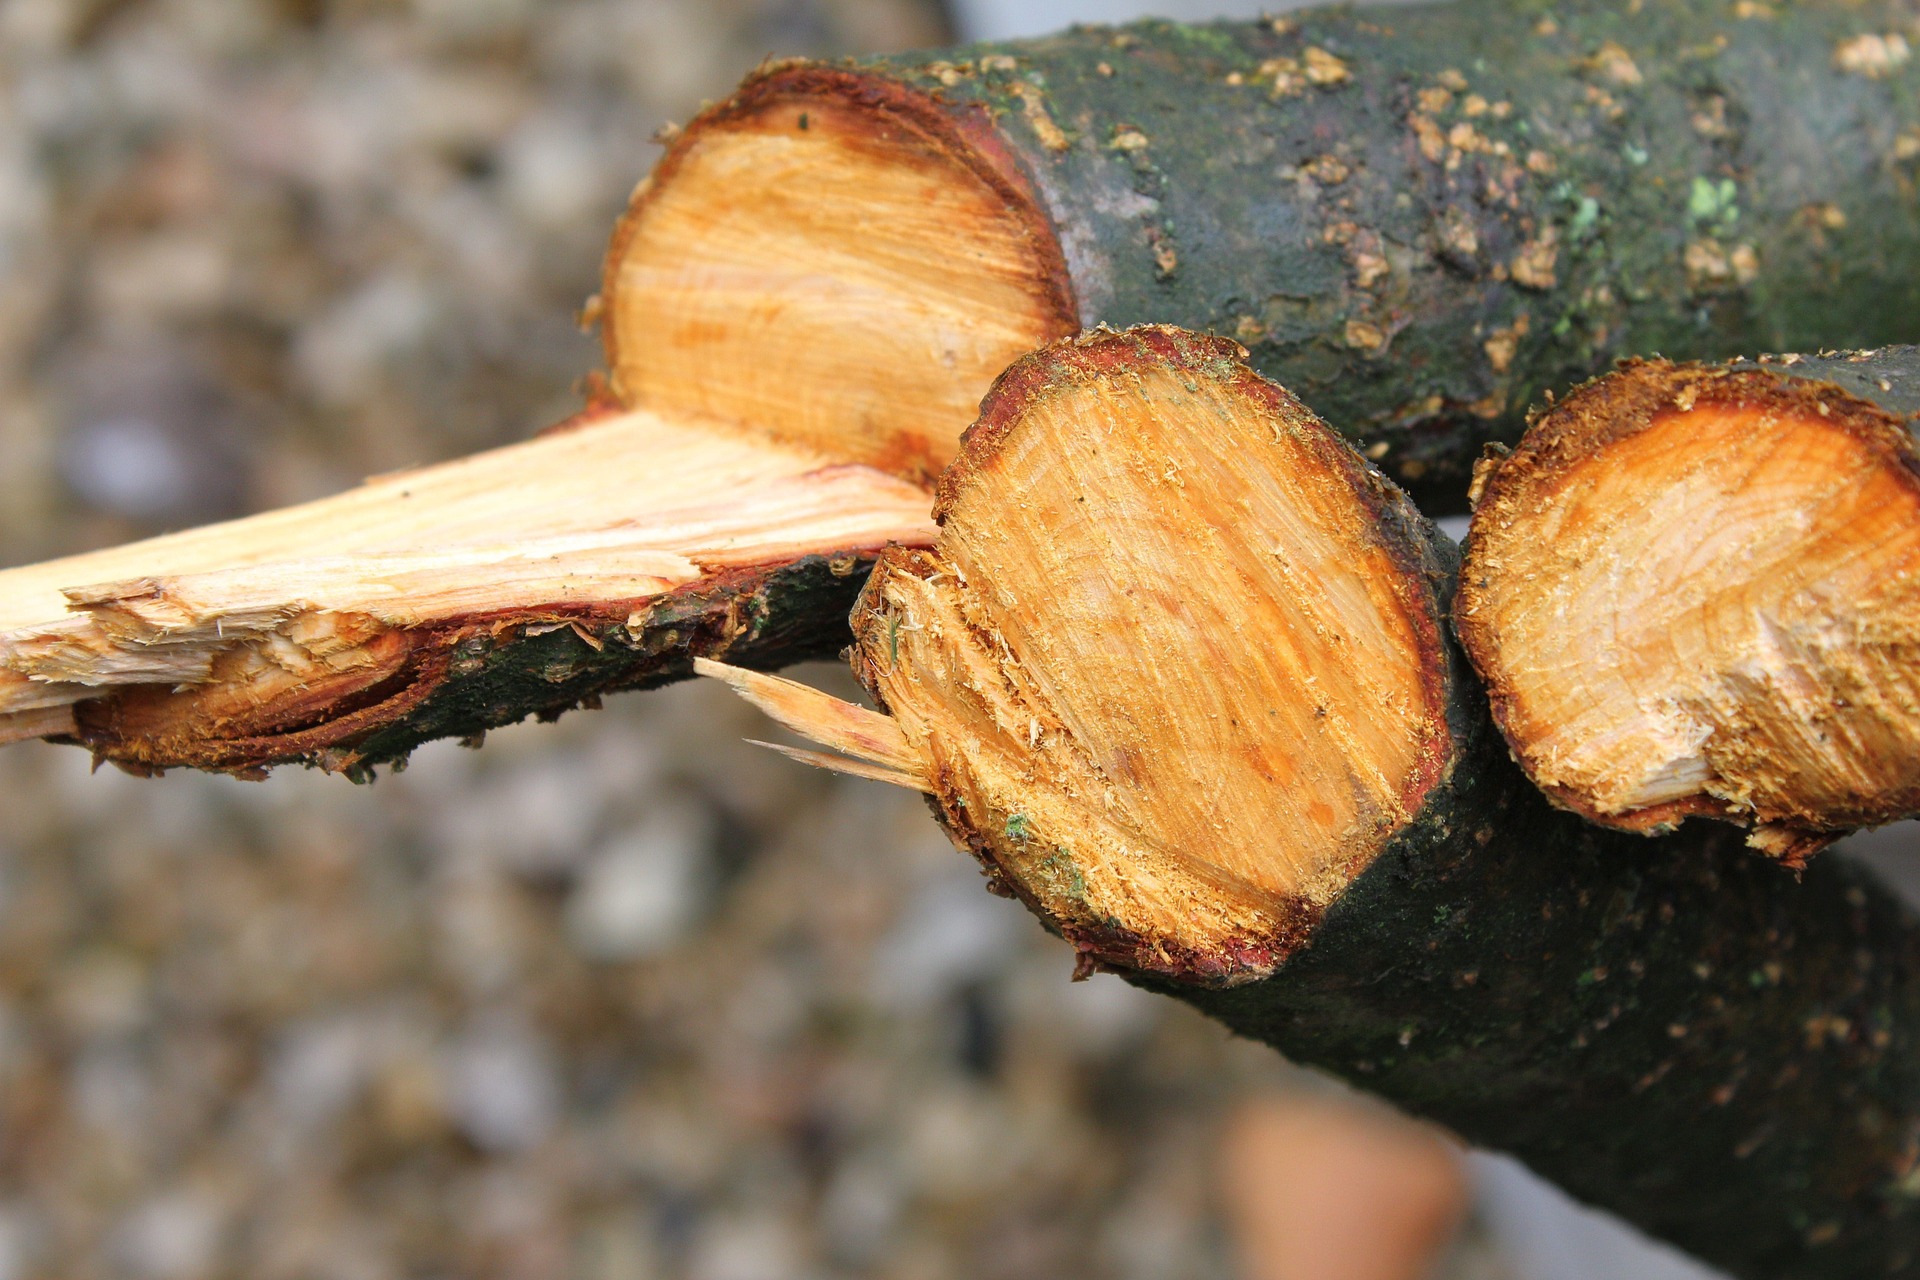 Cales d'abattage d'arbre efficaces et durables avec cale en